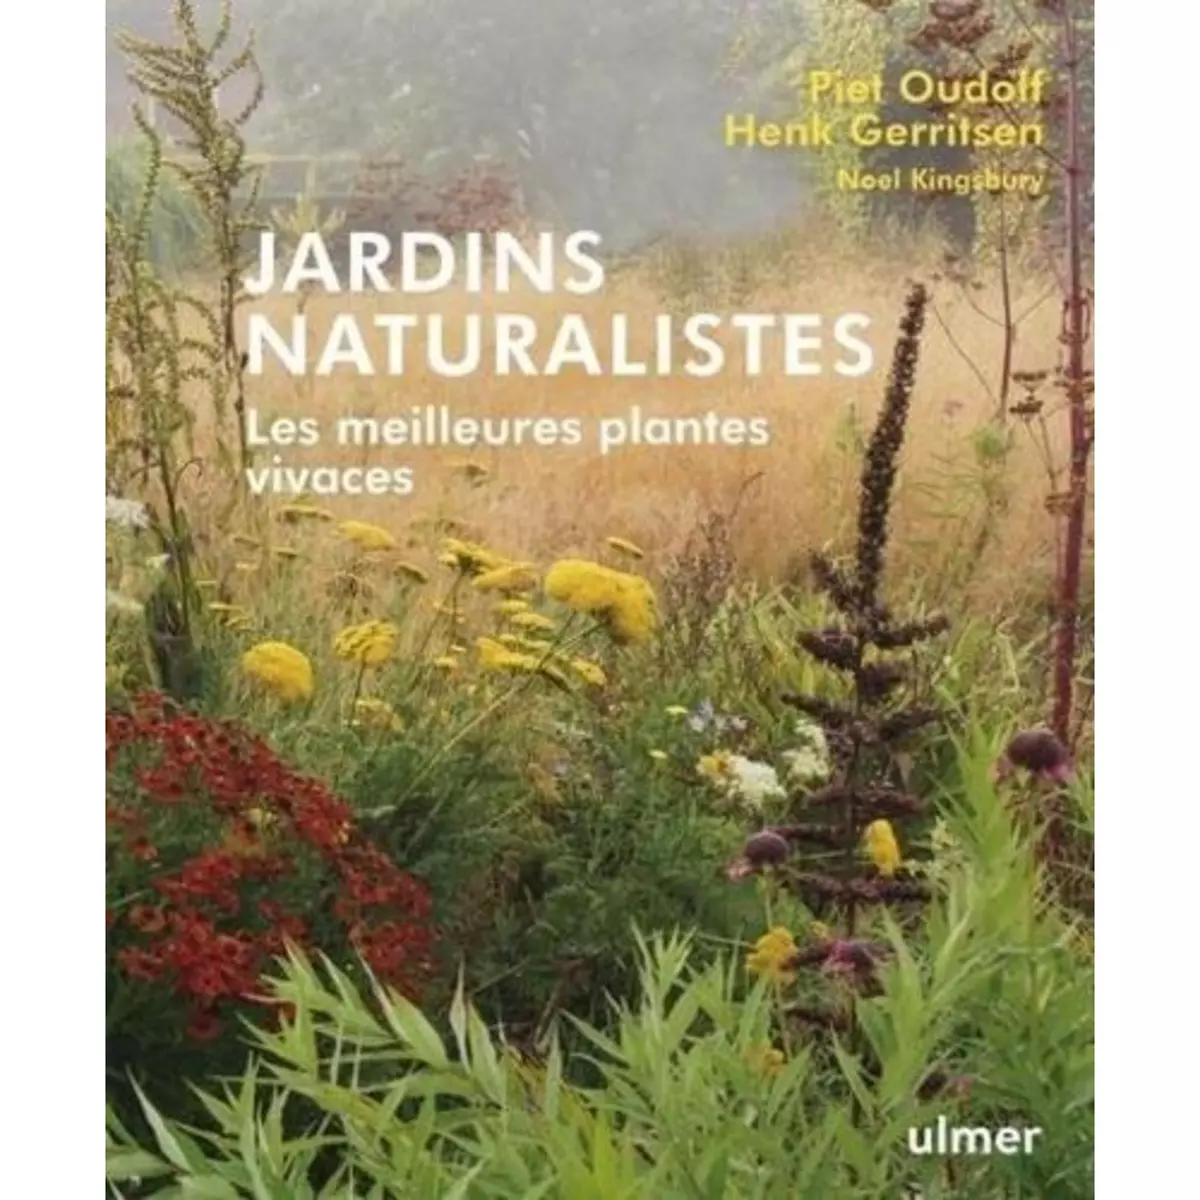  JARDINS NATURALISTES. LES MEILLEURES PLANTES VIVACES, Oudolf Piet